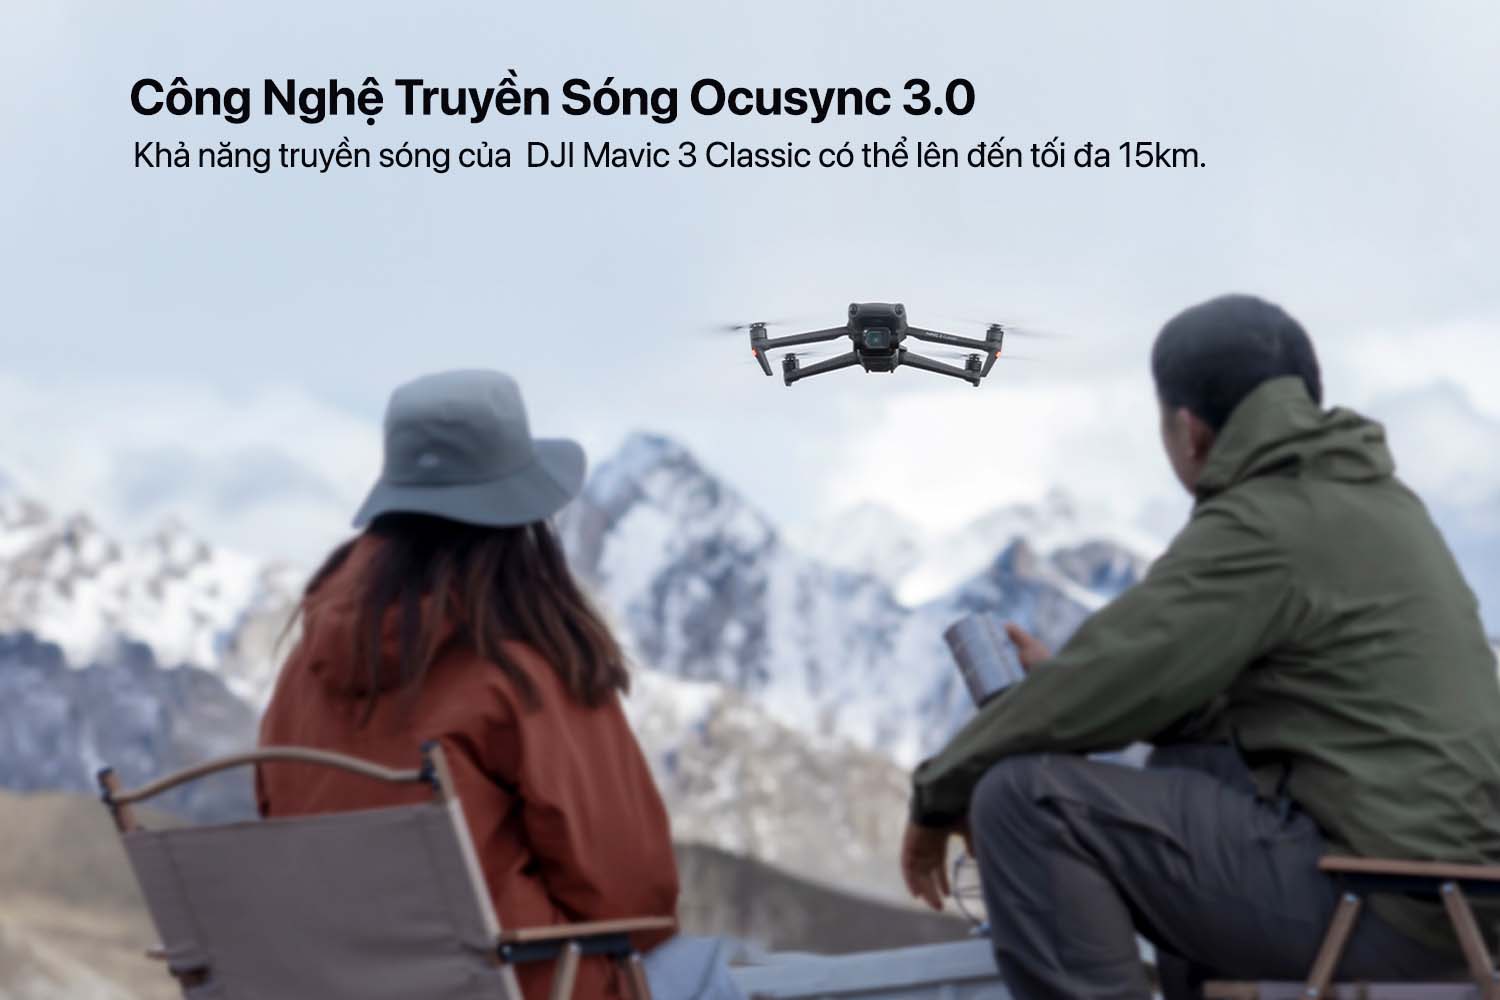 flycam dji mavic 3 classic 7 - Tầm quan trọng của hệ thống OcuSync trên các Drone tầm xa của DJI